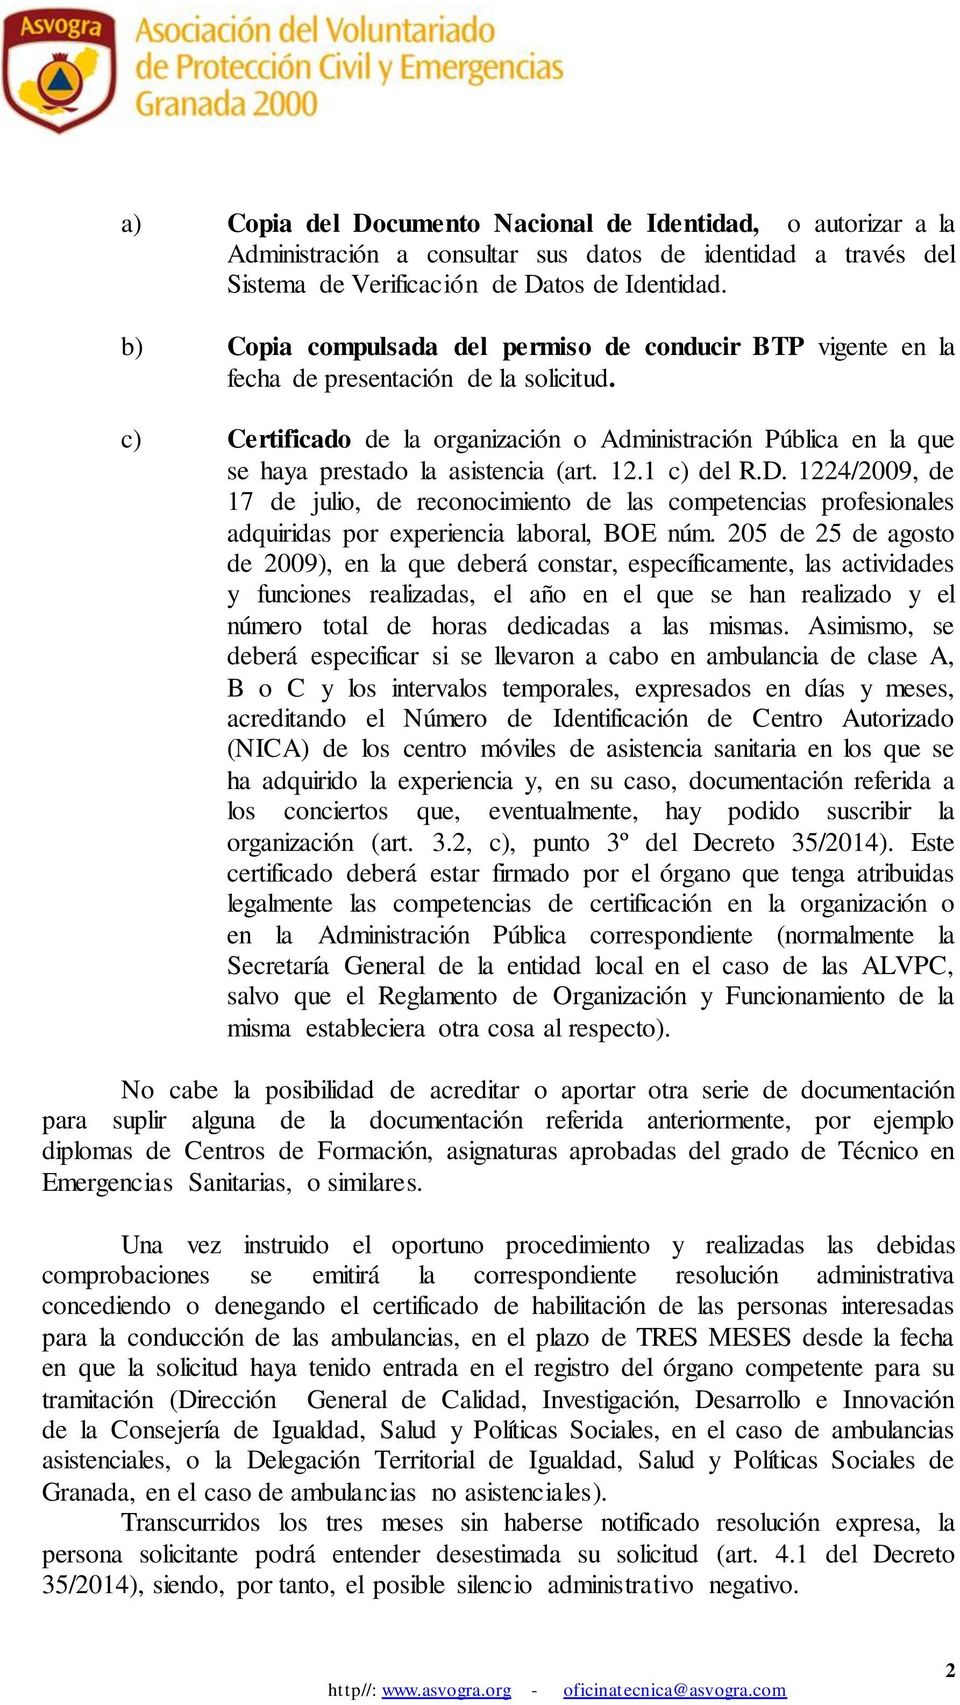 c) Certificado de la organización o Administración Pública en la que se haya prestado la asistencia (art. 12.1 c) del R.D.